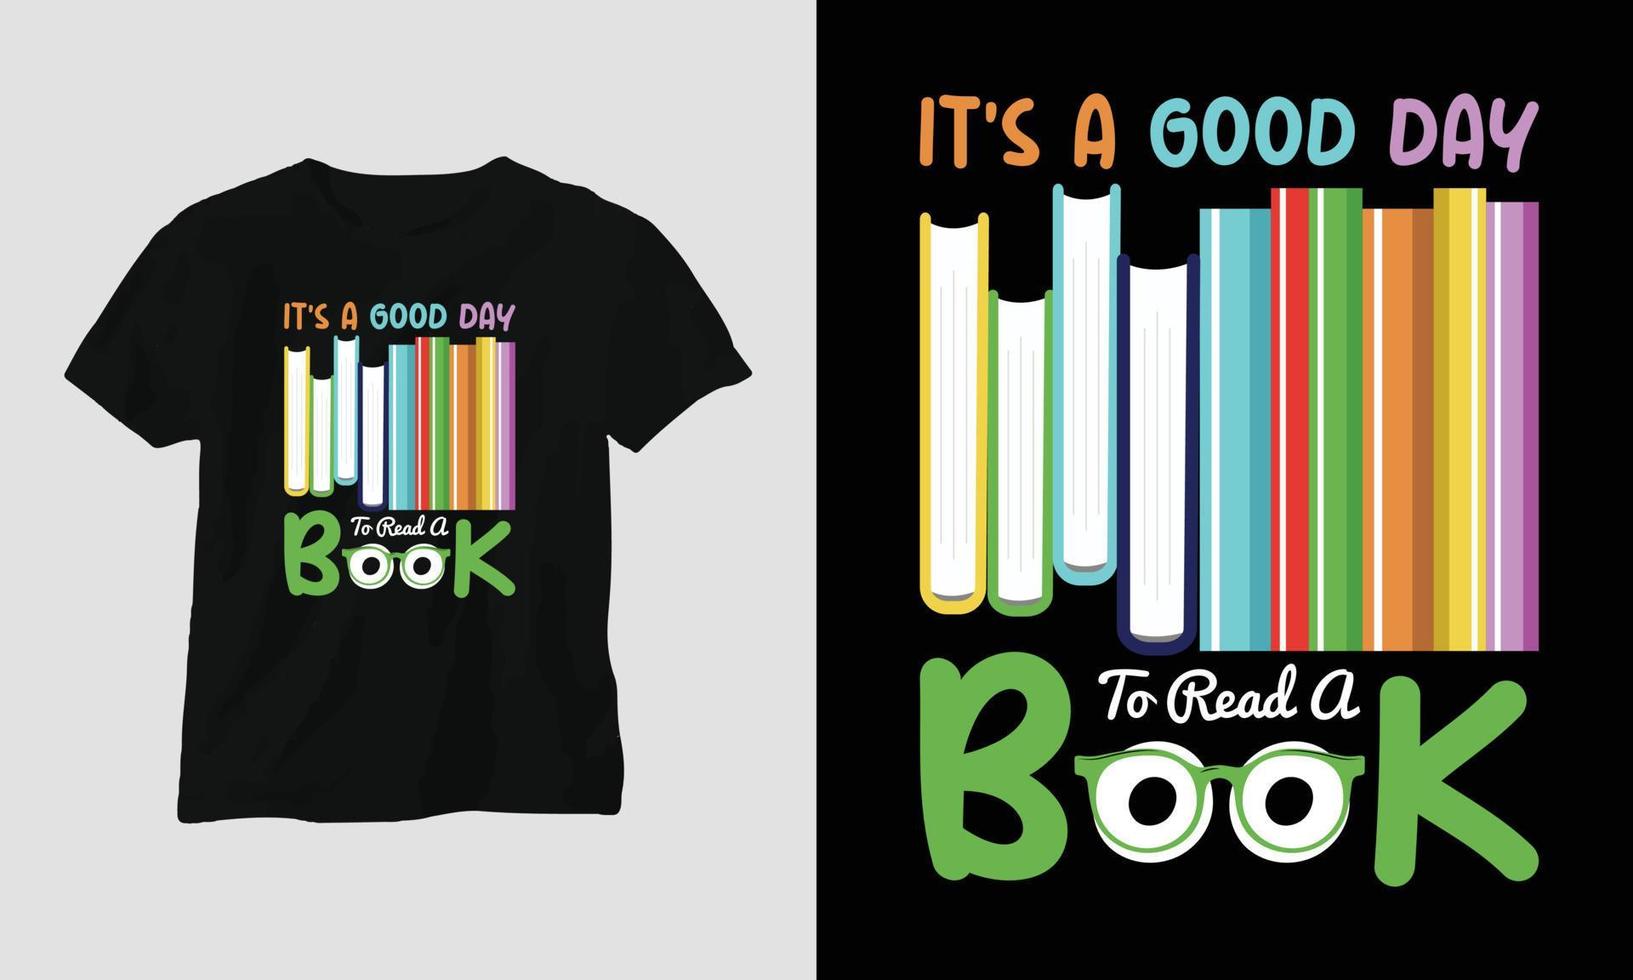 design de camiseta de amante de livro vetorial, tipografia com uma bela ilustração de livros vetor